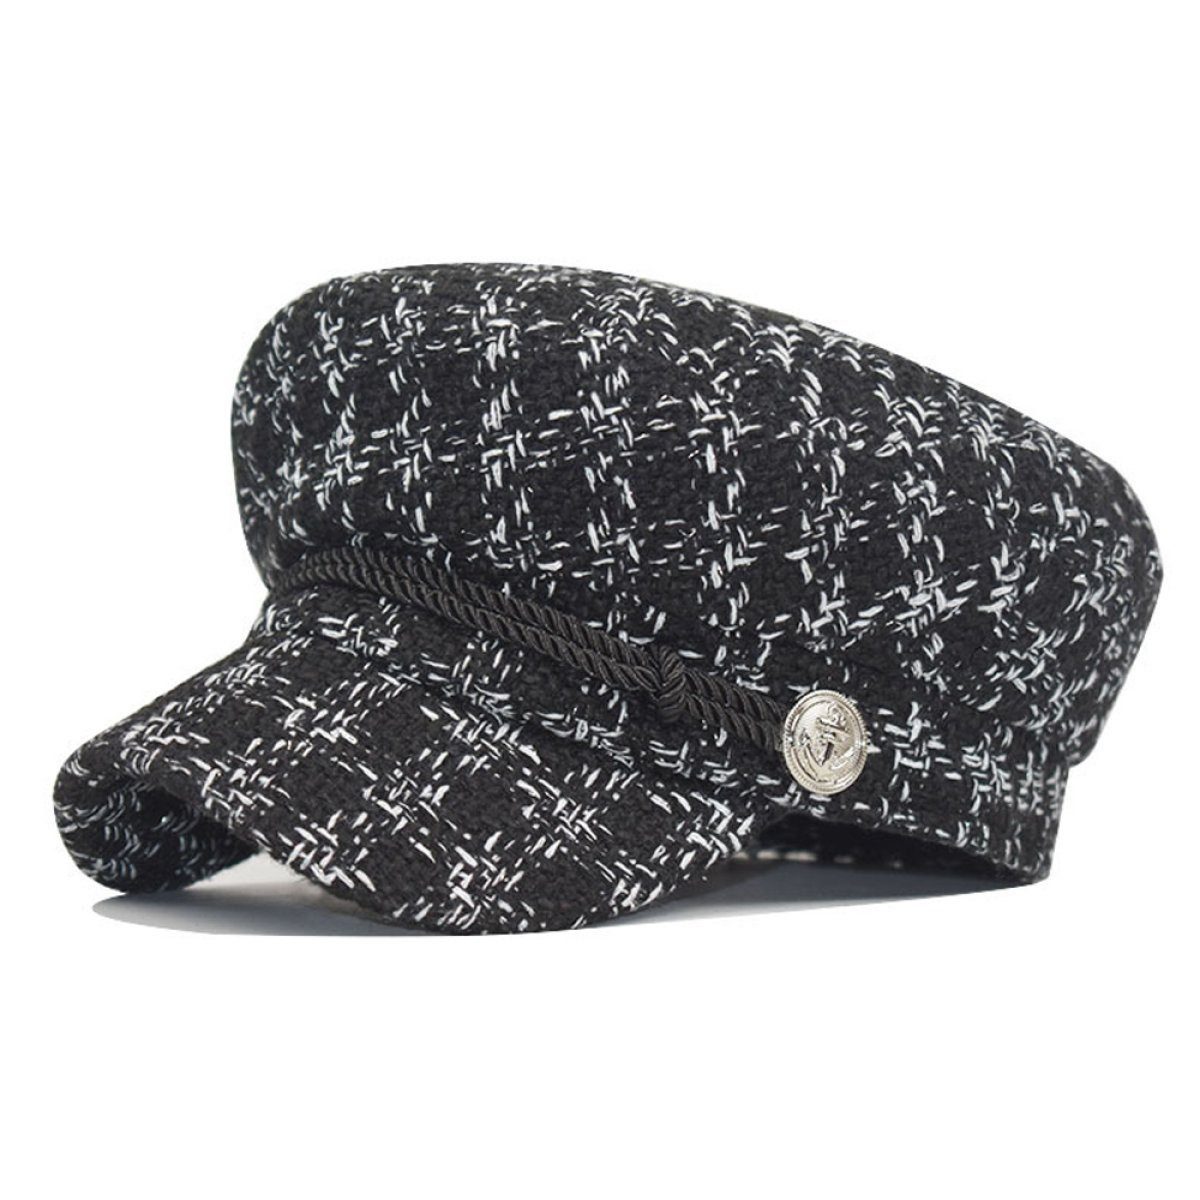 LENBEST Schirmmütze für Lässig (56-58cm) Wintermütze Elegant Baskenmütze Frauen black Kappe